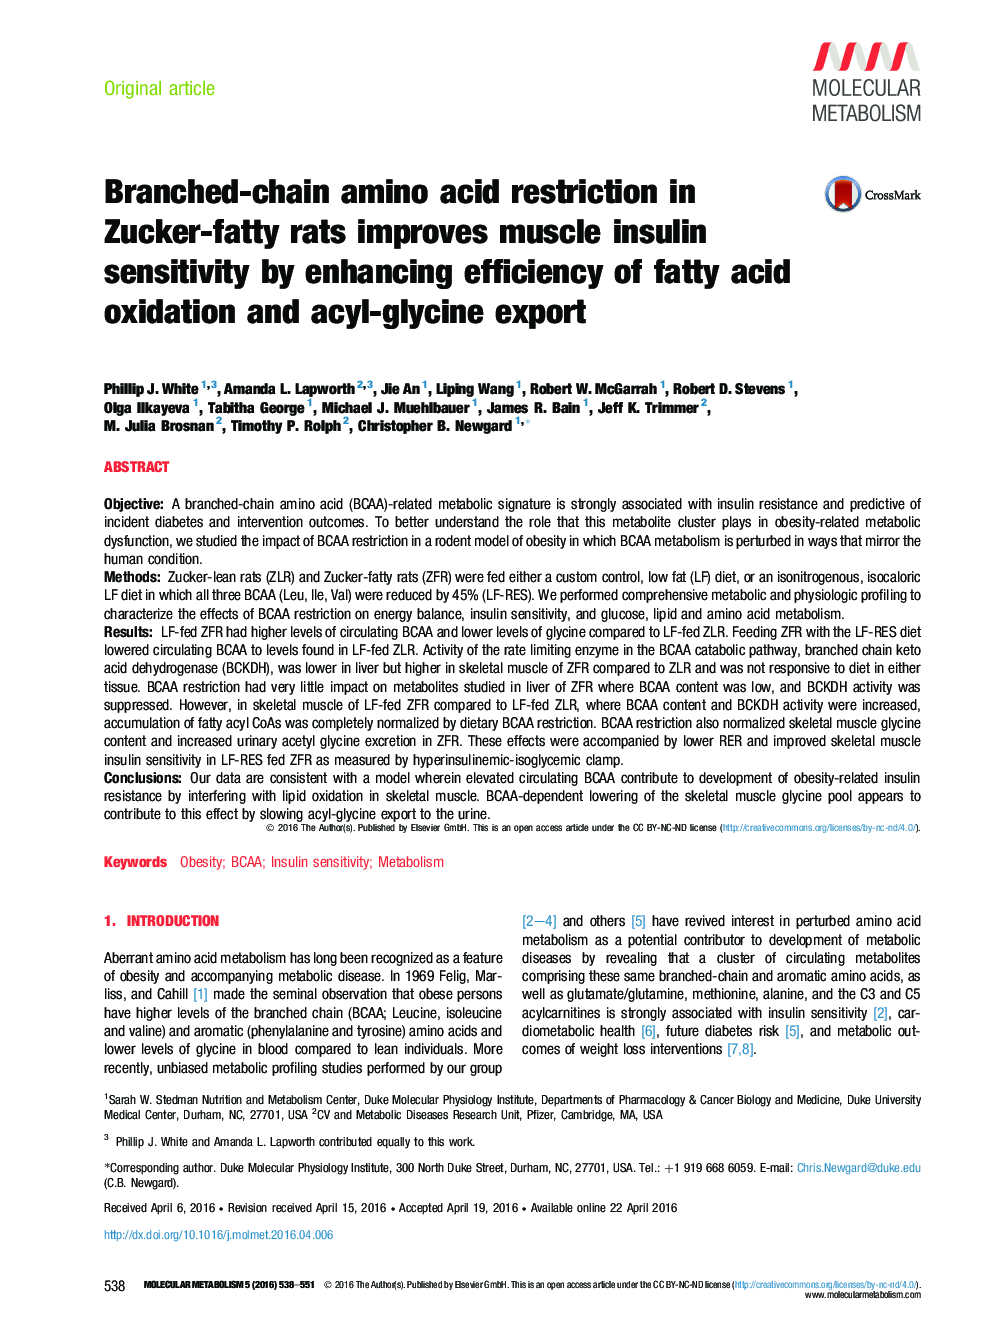 زنجیره شاخه محدودیت اسید آمینه در موش زوکر چرب را بهبود می بخشد حساسیت به انسولین عضله از طریق افزایش کارایی اکسیداسیون اسیدهای چرب و صادرات آسیل-گلیسین